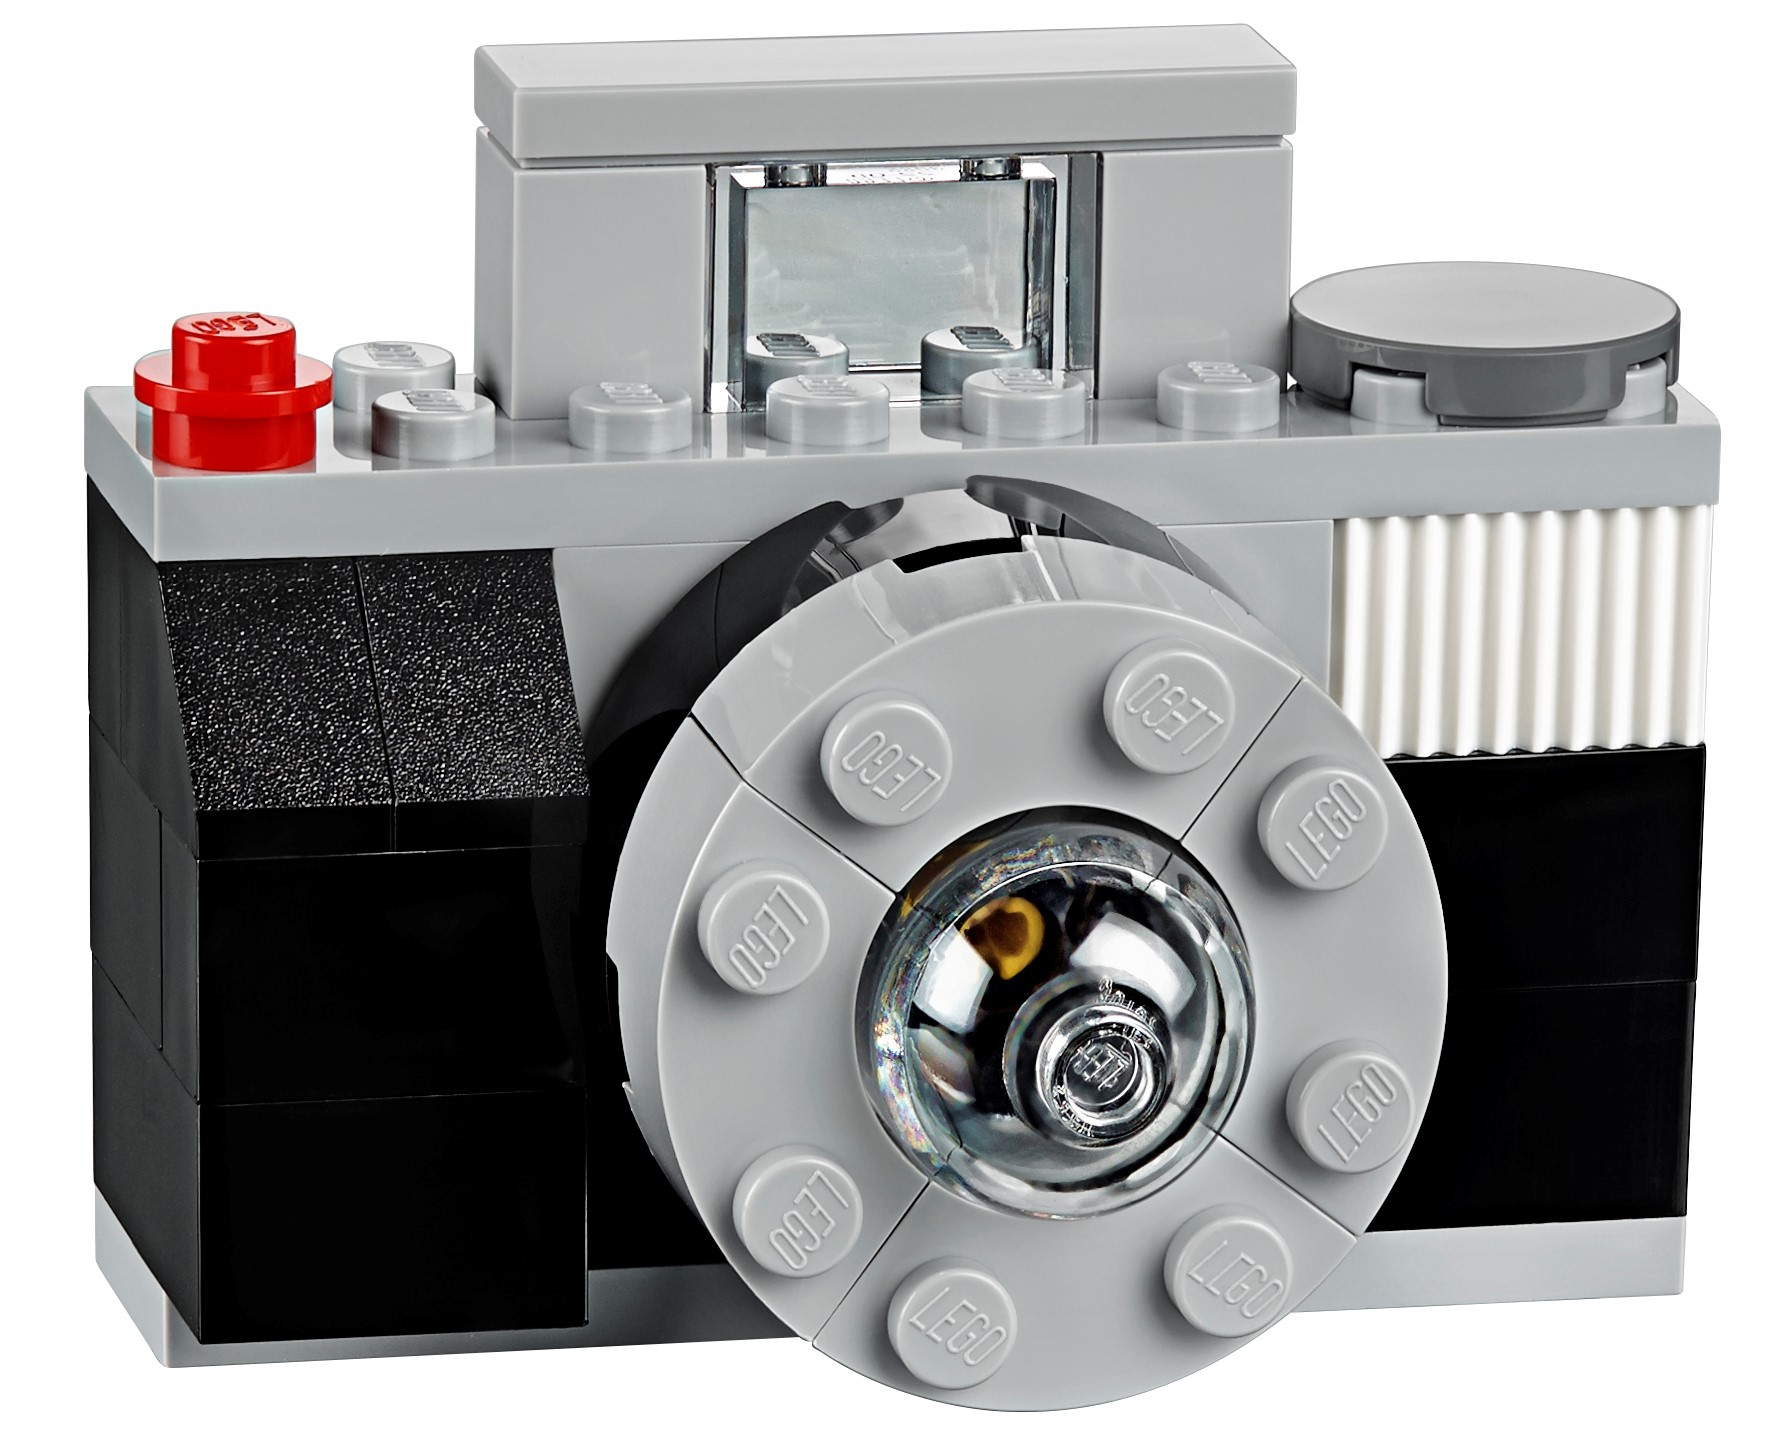 Rent LEGO set: Boîte de briques LEGO® Classic at Lend-a-Brick